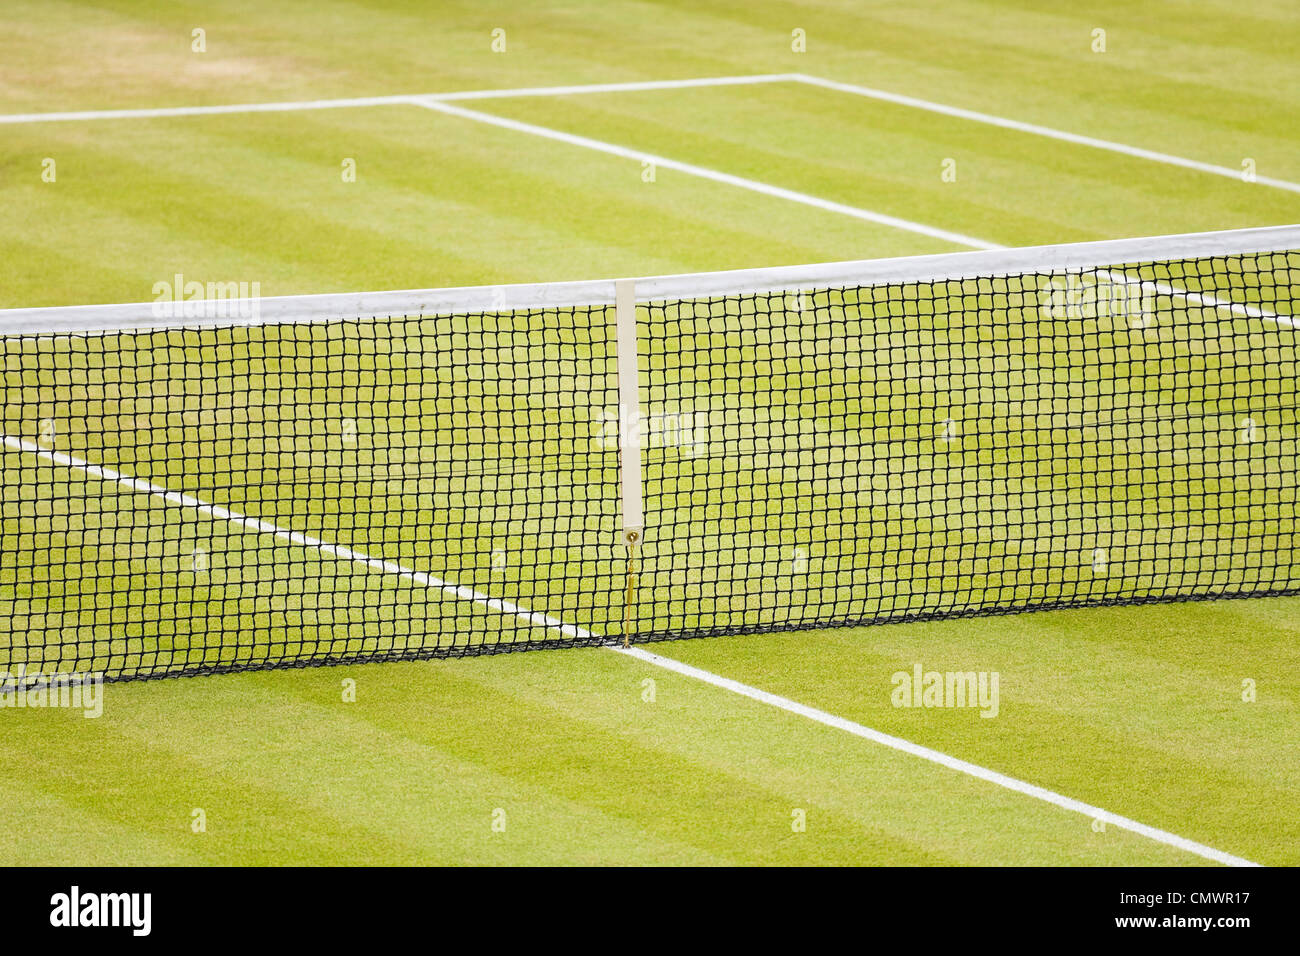 Libre d'un court de tennis sur gazon avec net et les lignes Banque D'Images